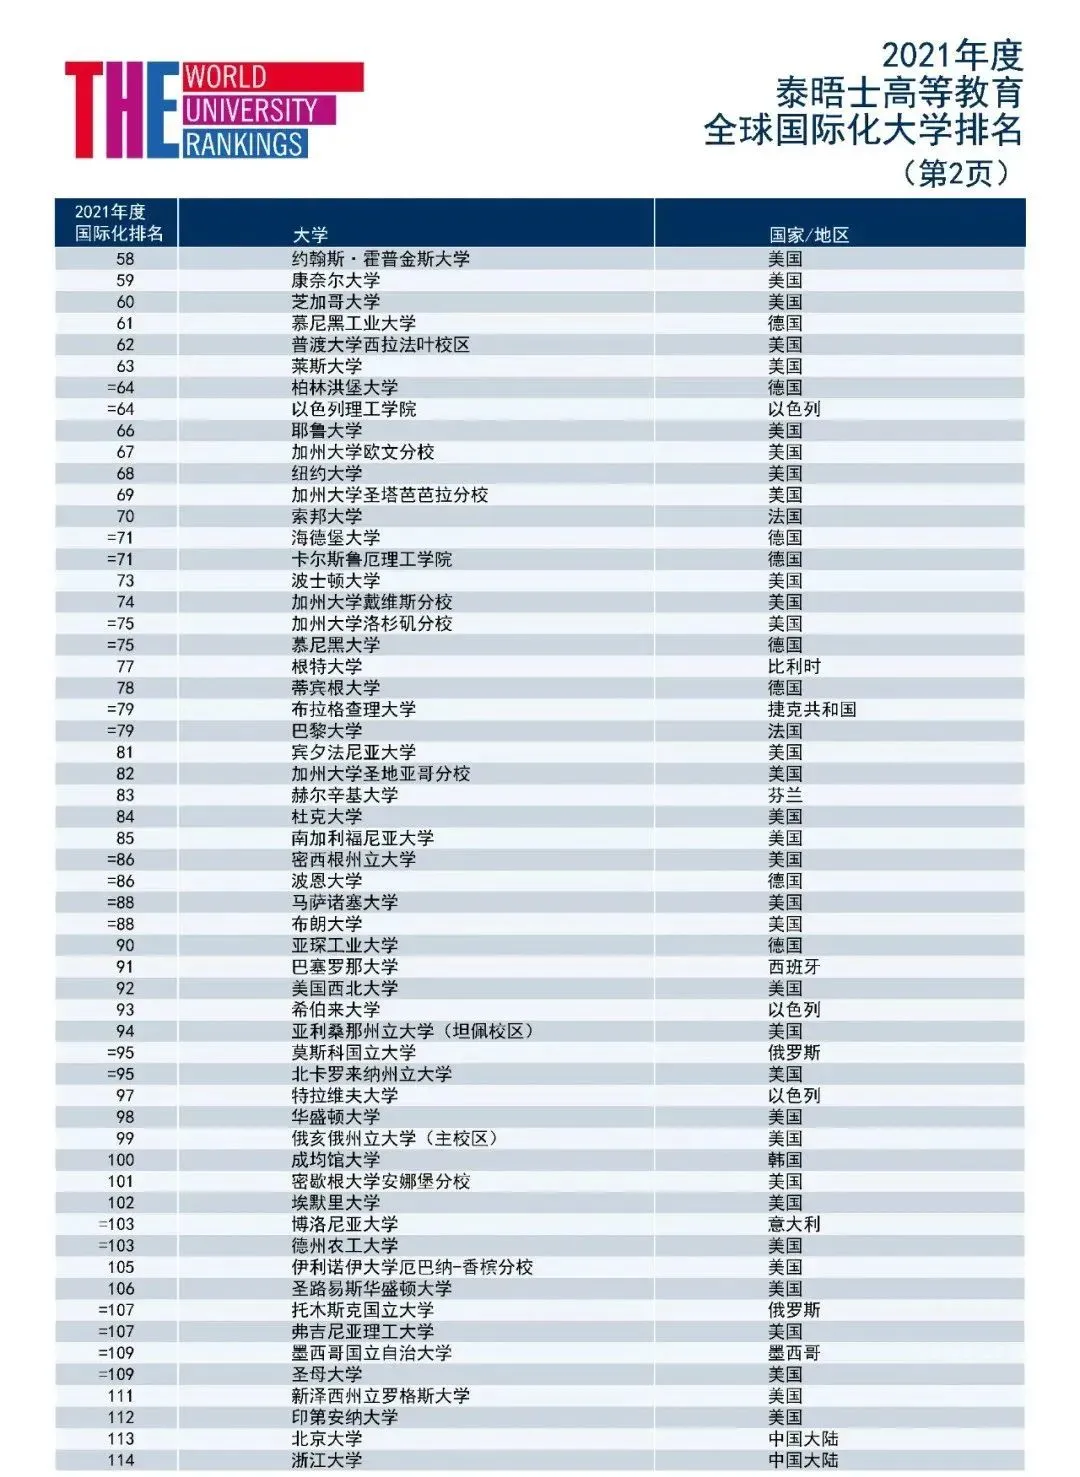 2021世界大学排名: 牛剑不敌港中文, 这所大学超越斯坦福夺魁!